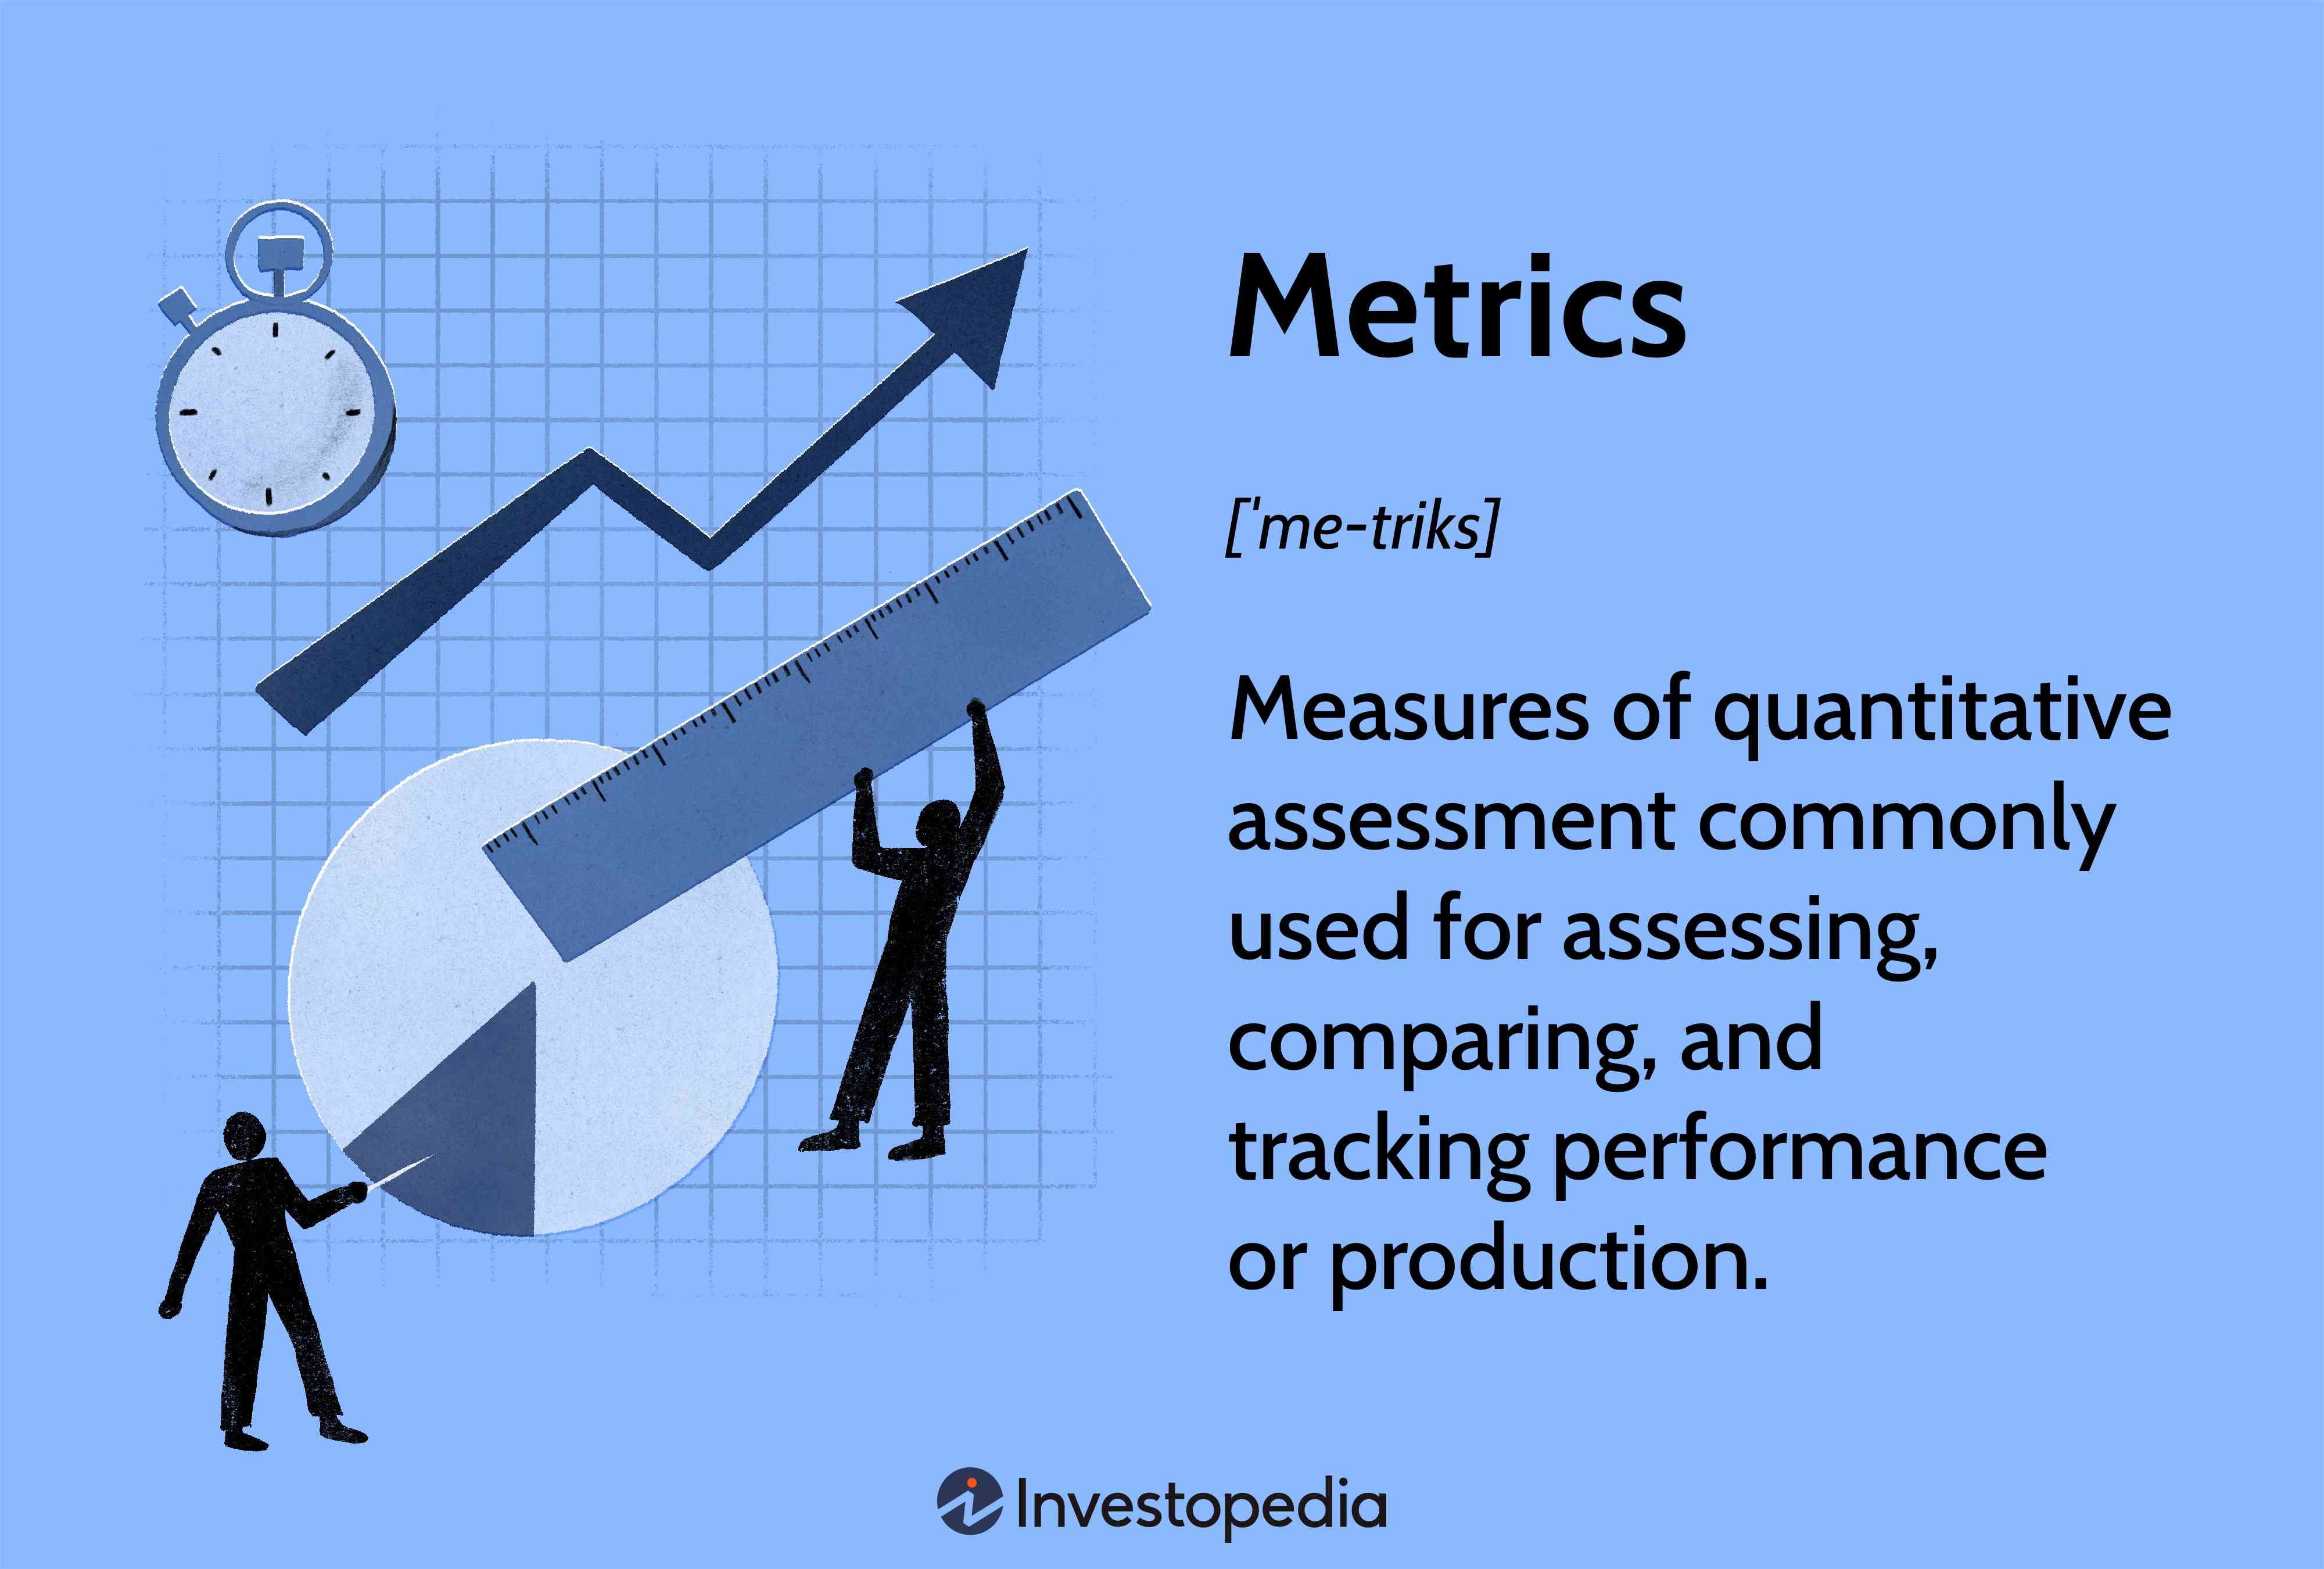 度量评估常用评估、比较和跟踪性能或生产